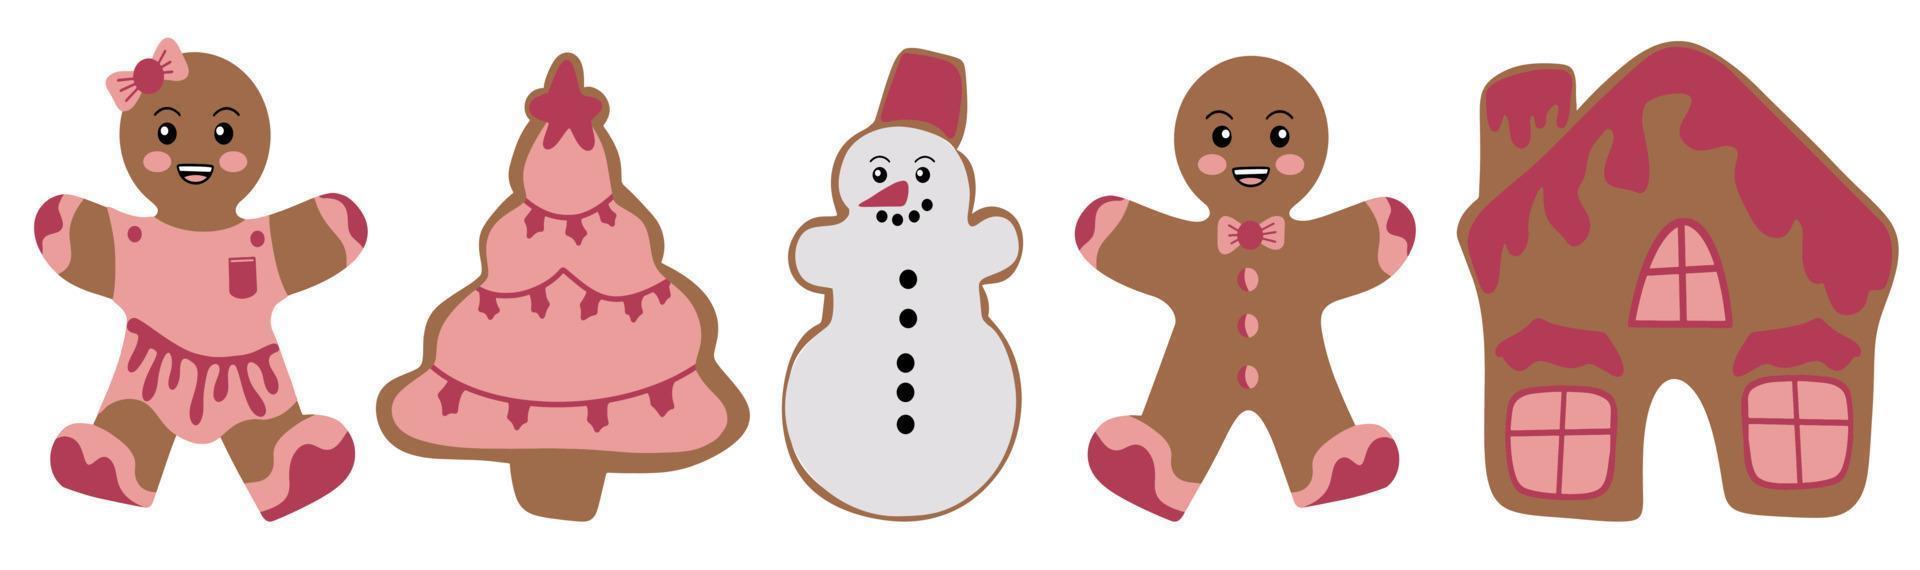 pain d'épice festif. biscuits en forme d'hommes et de personnages différents avec glaçage. joyeux Noël. célébration du nouvel an et de noël. vecteur